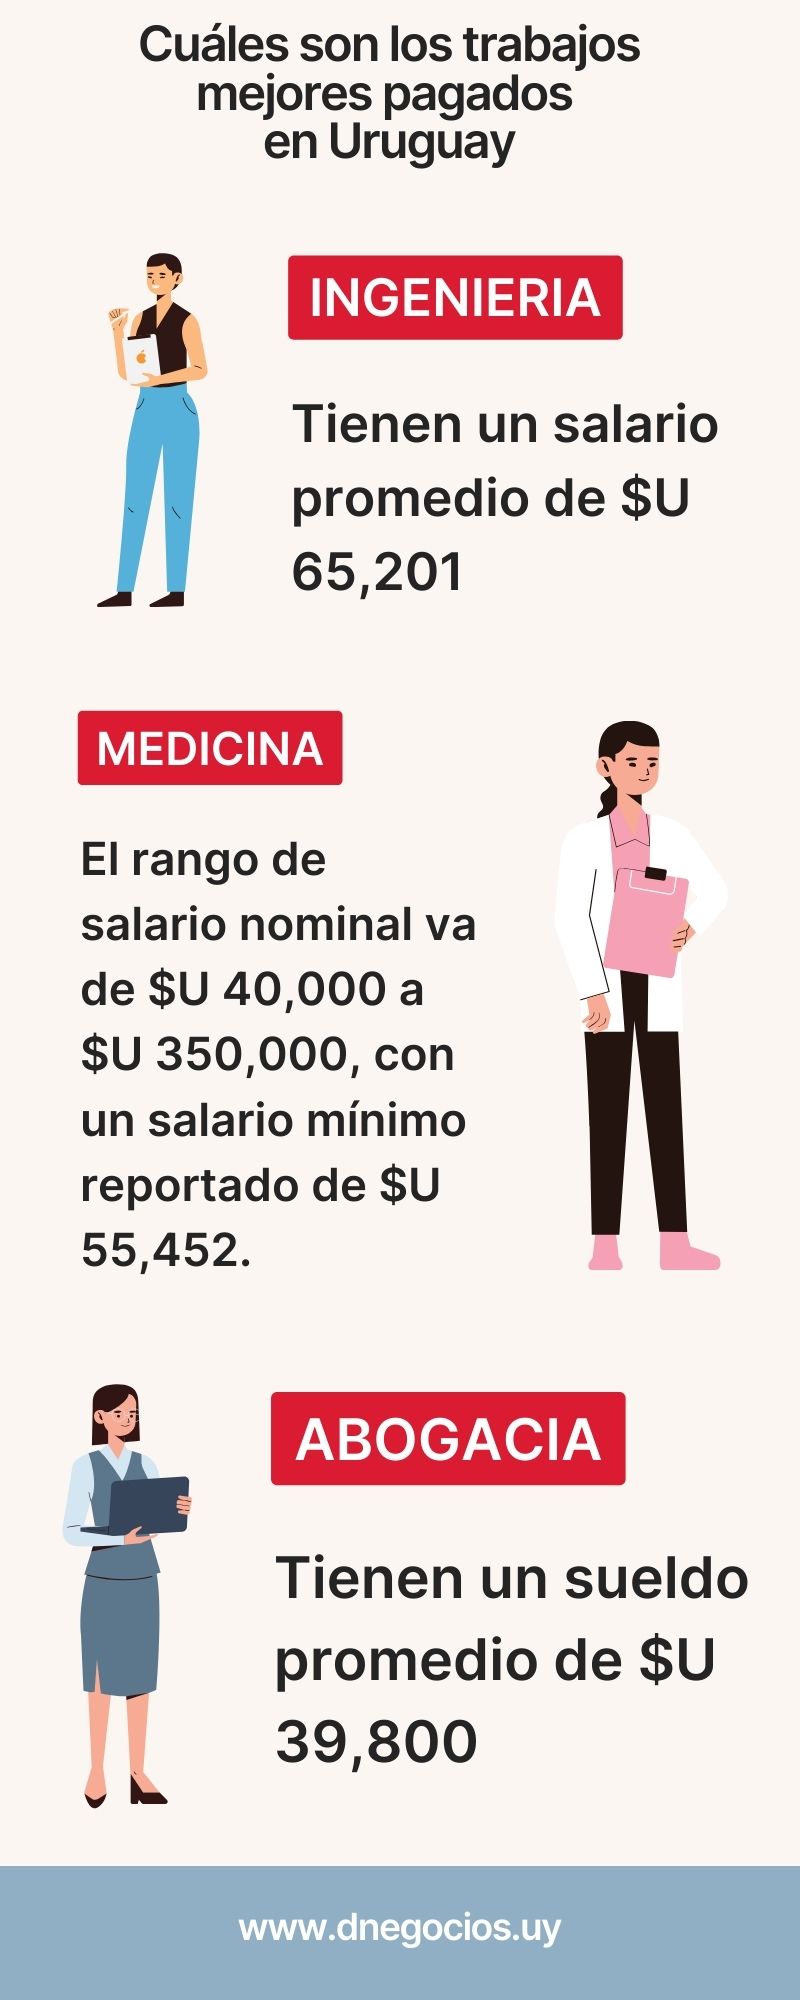 Infografía que muestra los trabajos mejores remunerados en Uruguay.